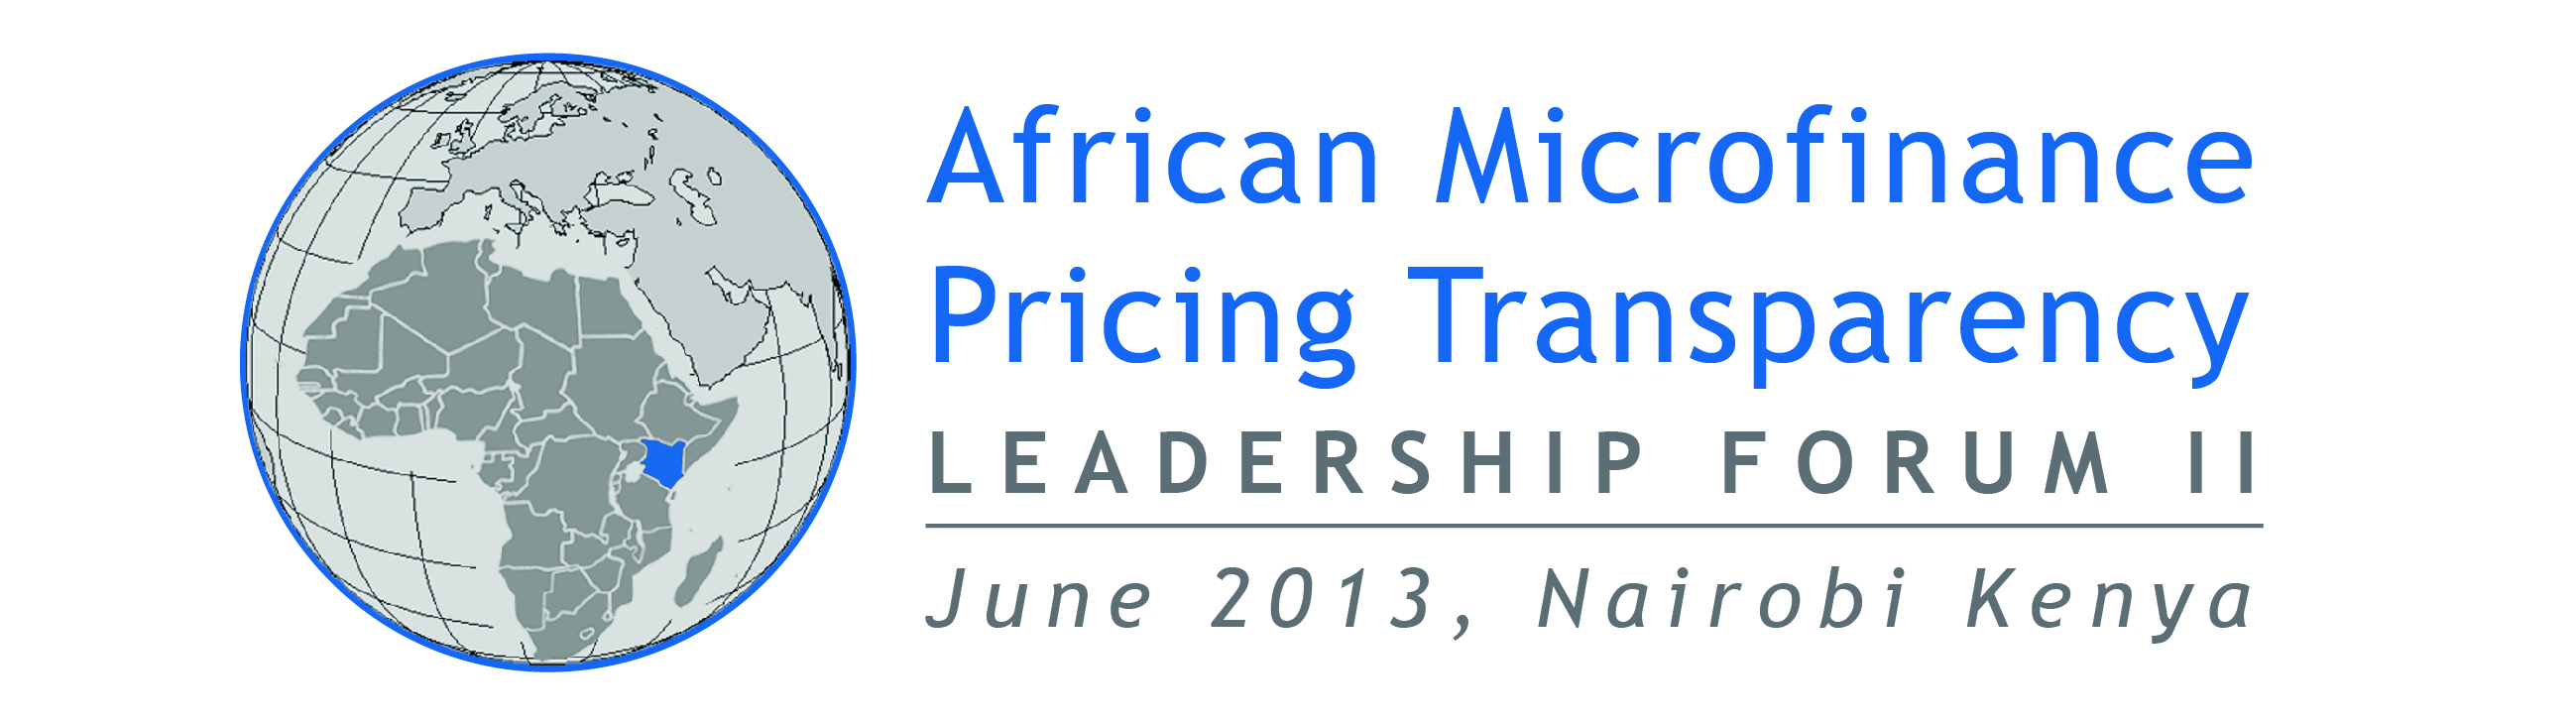 African Microfinance Transparency Leadership Forum II Logo